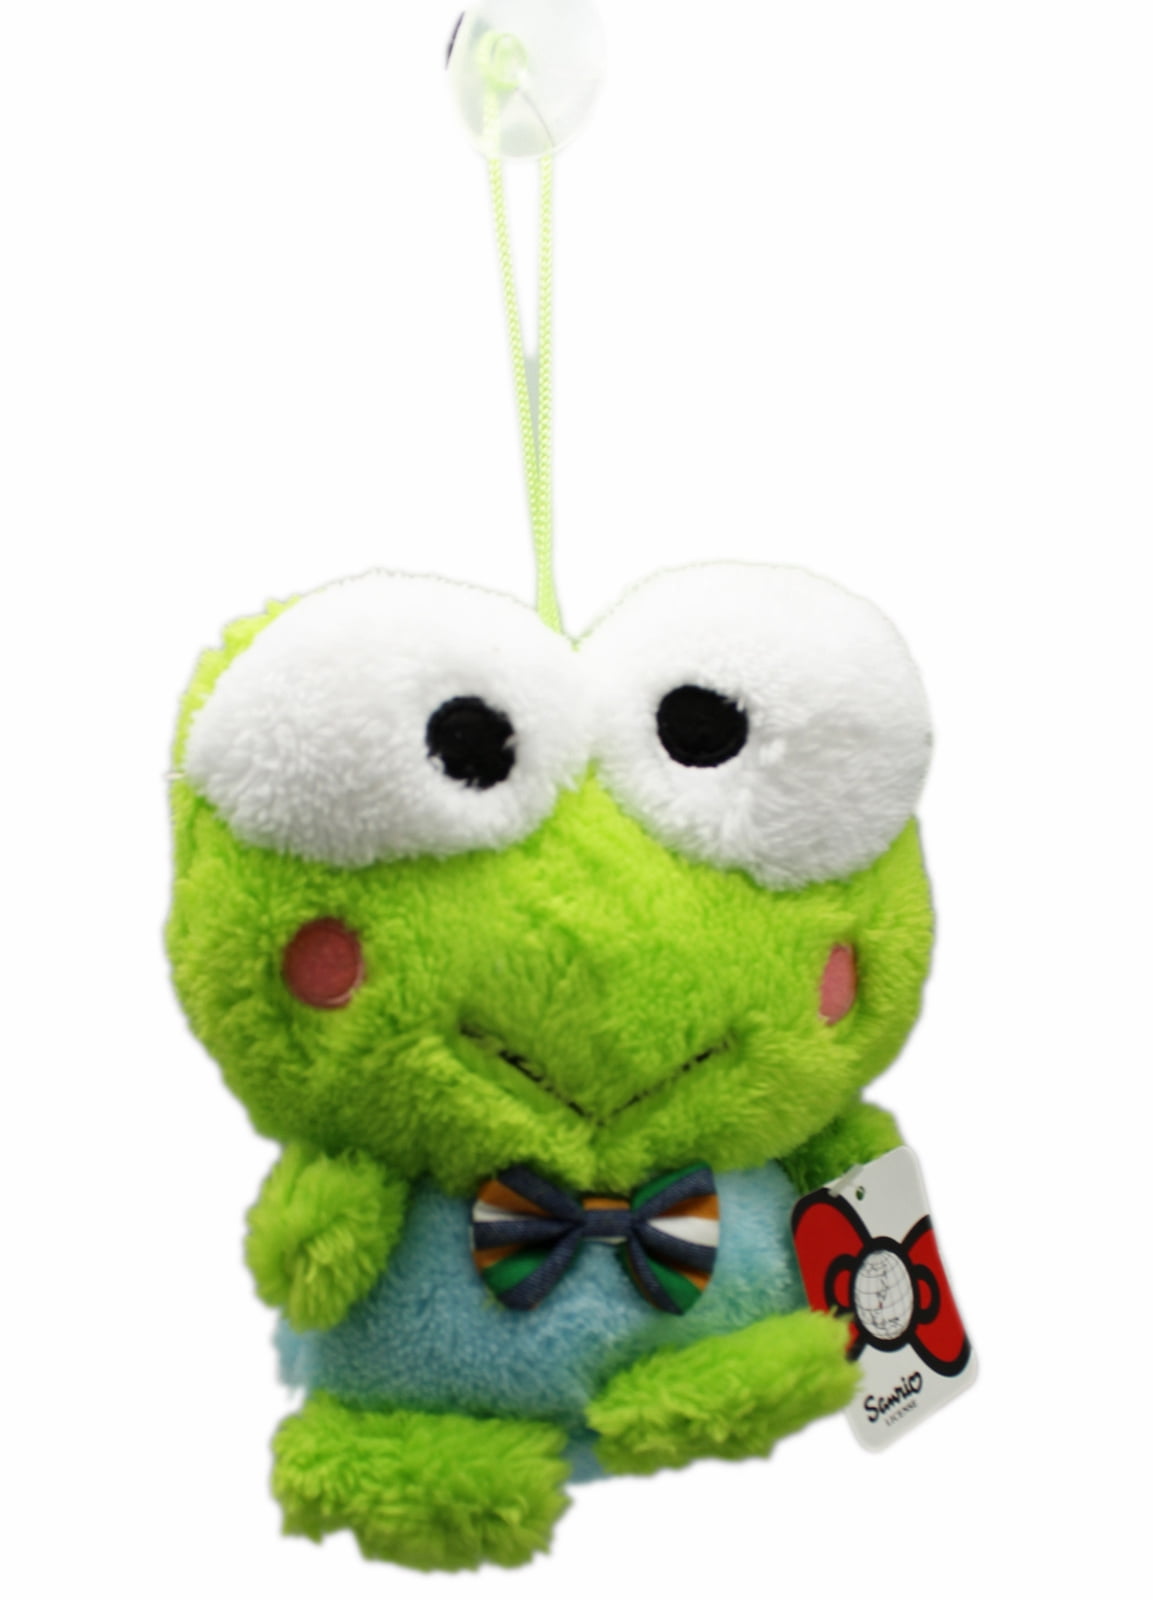 Sanrio Hello Kitty Keroppi Frog Green Plush 6” NWT